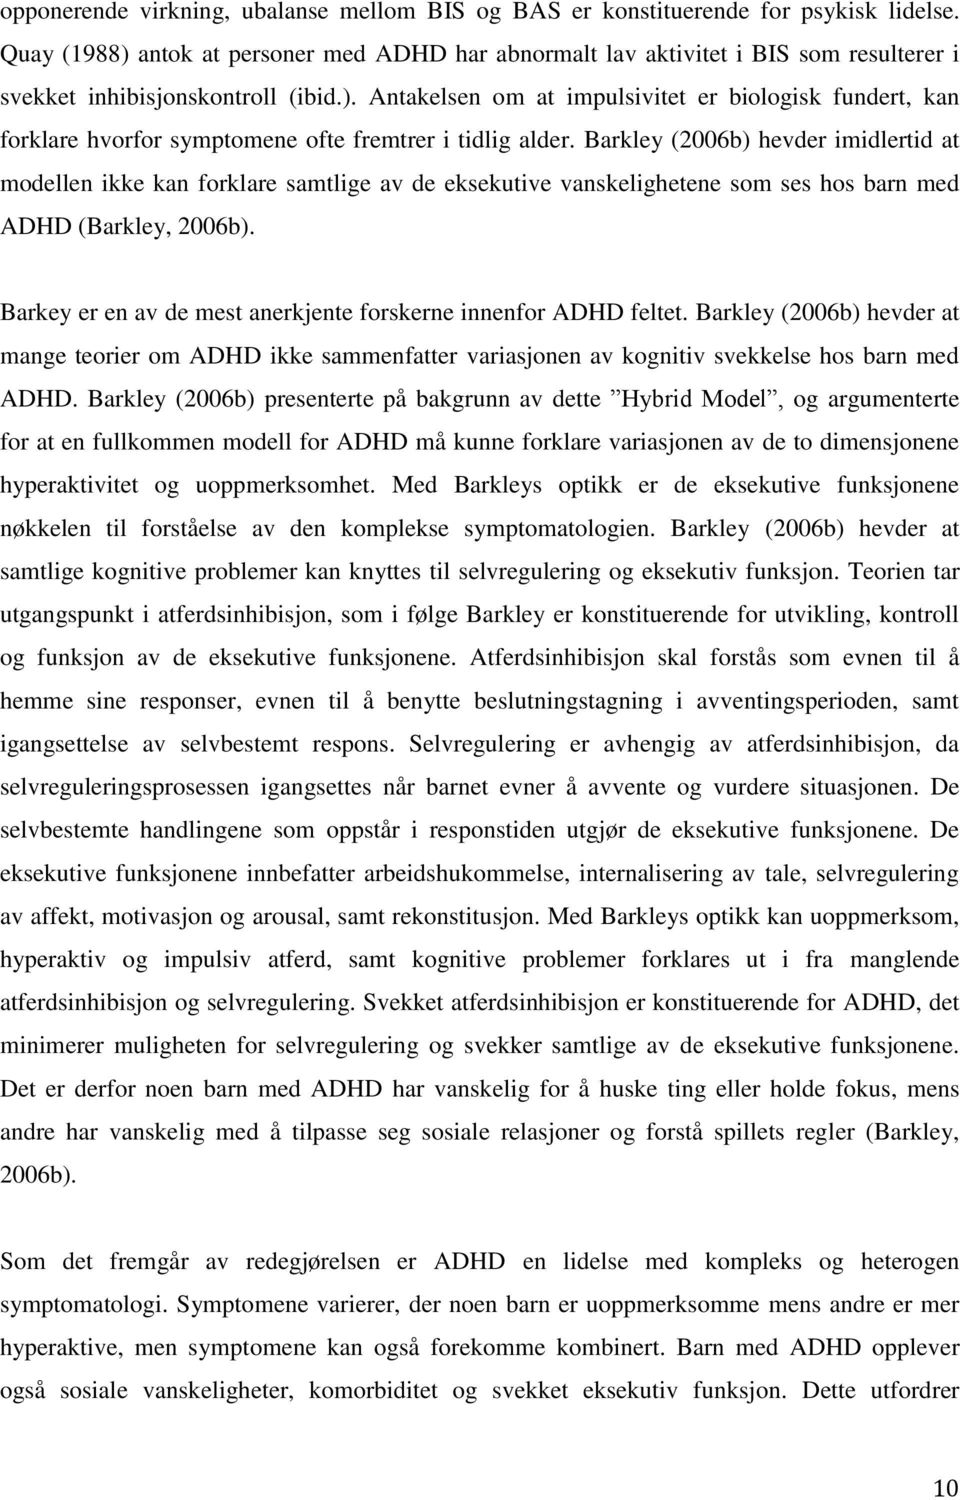 Barkley (2006b) hevder imidlertid at modellen ikke kan forklare samtlige av de eksekutive vanskelighetene som ses hos barn med ADHD (Barkley, 2006b).